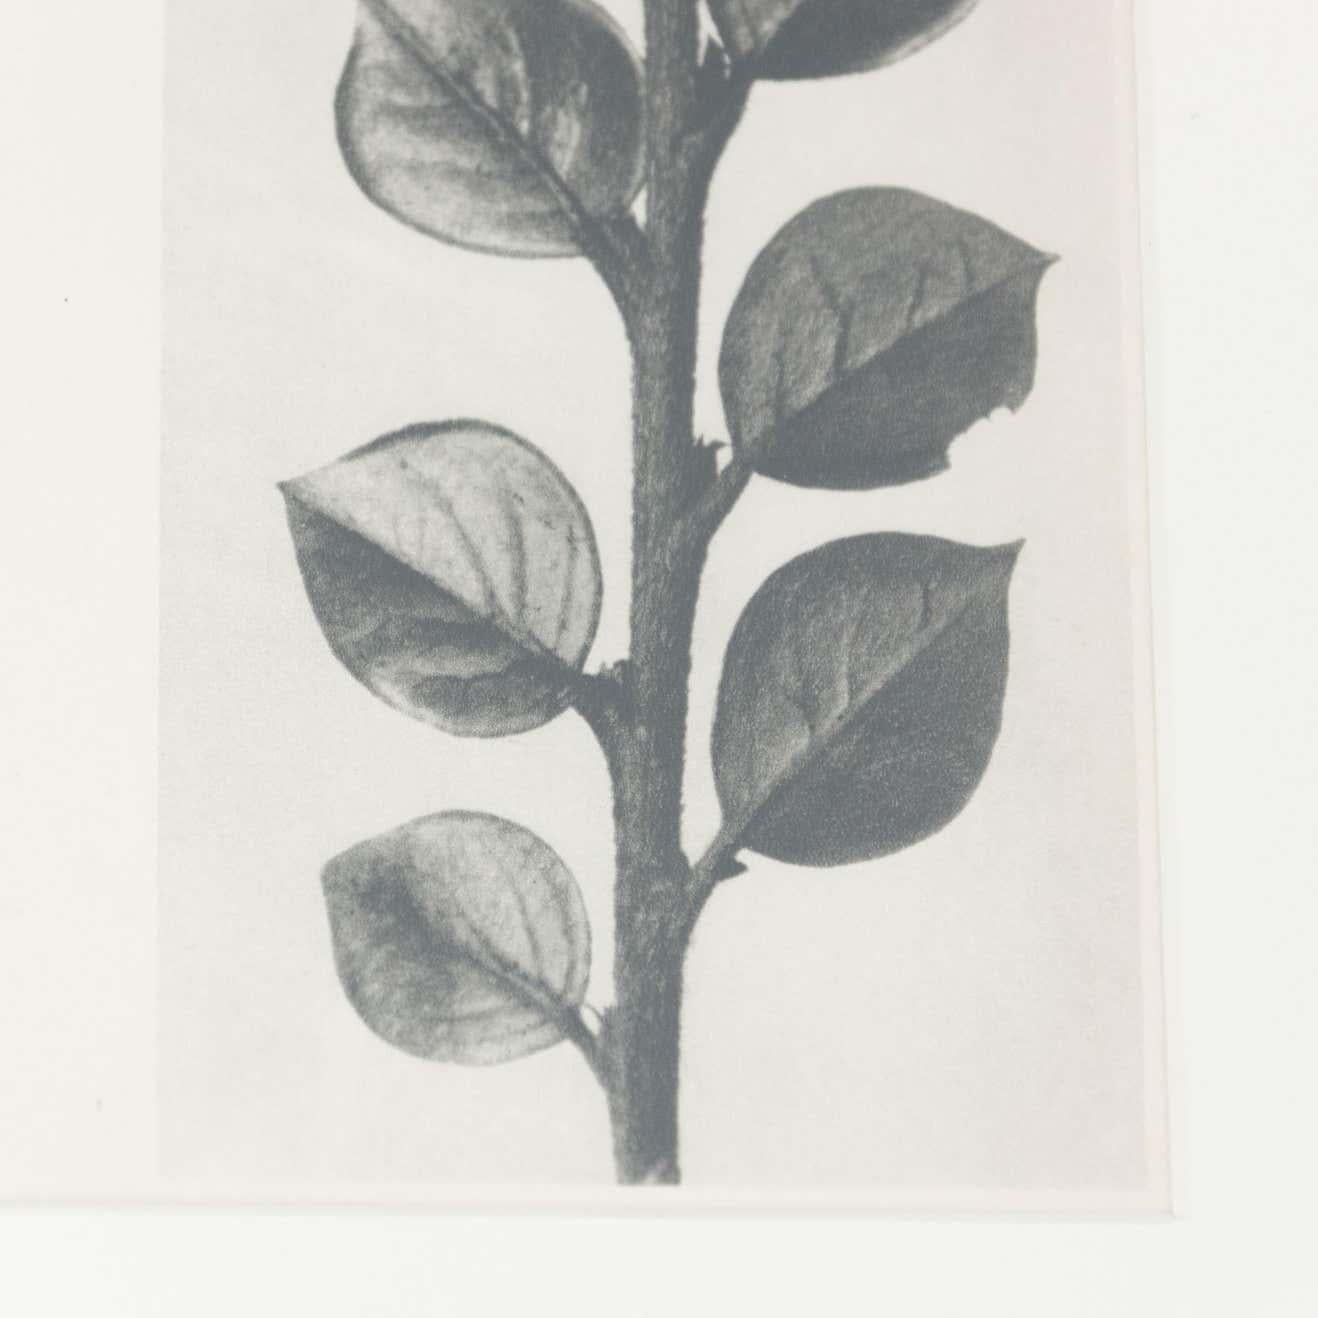 Set of 6 Karl Blossfeldt Black White Flower Photogravure Botanic Photographies 8